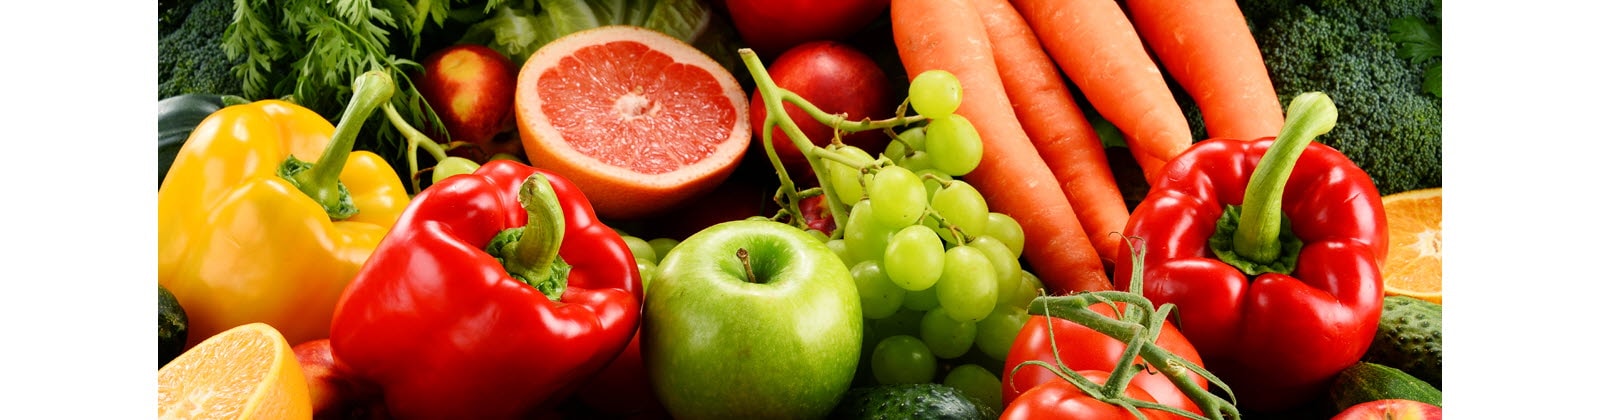 Lựa chọn các loại trái cây và rau quả tươi, có màu sắc rực rỡ.